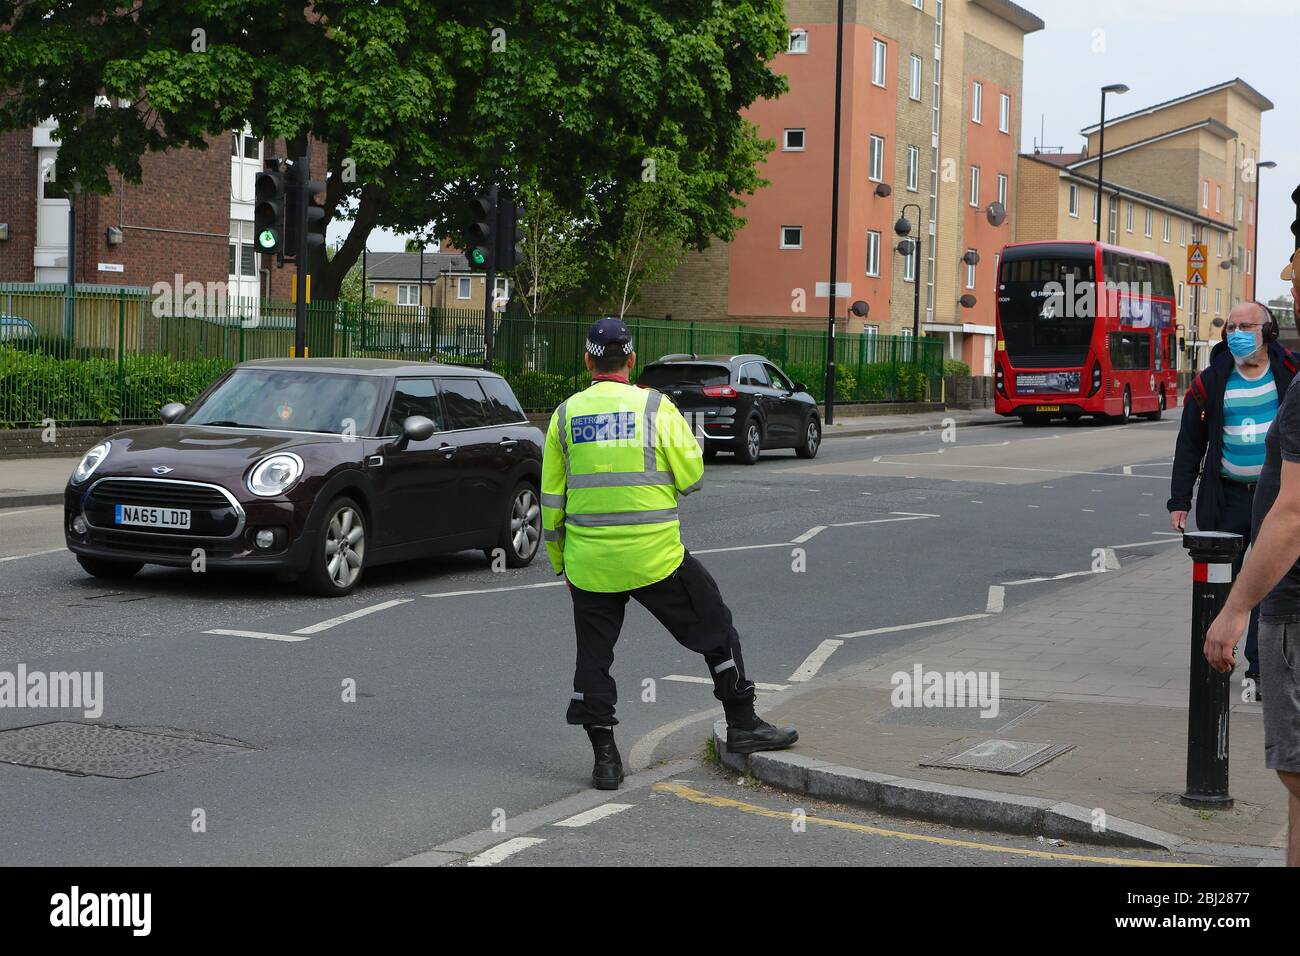 La policía de tráfico de Londres impone restricciones de velocidad en una zona de 20 mph. Desde el mismo período del año pasado se ha producido un aumento del 230% en la velocidad. Foto de stock